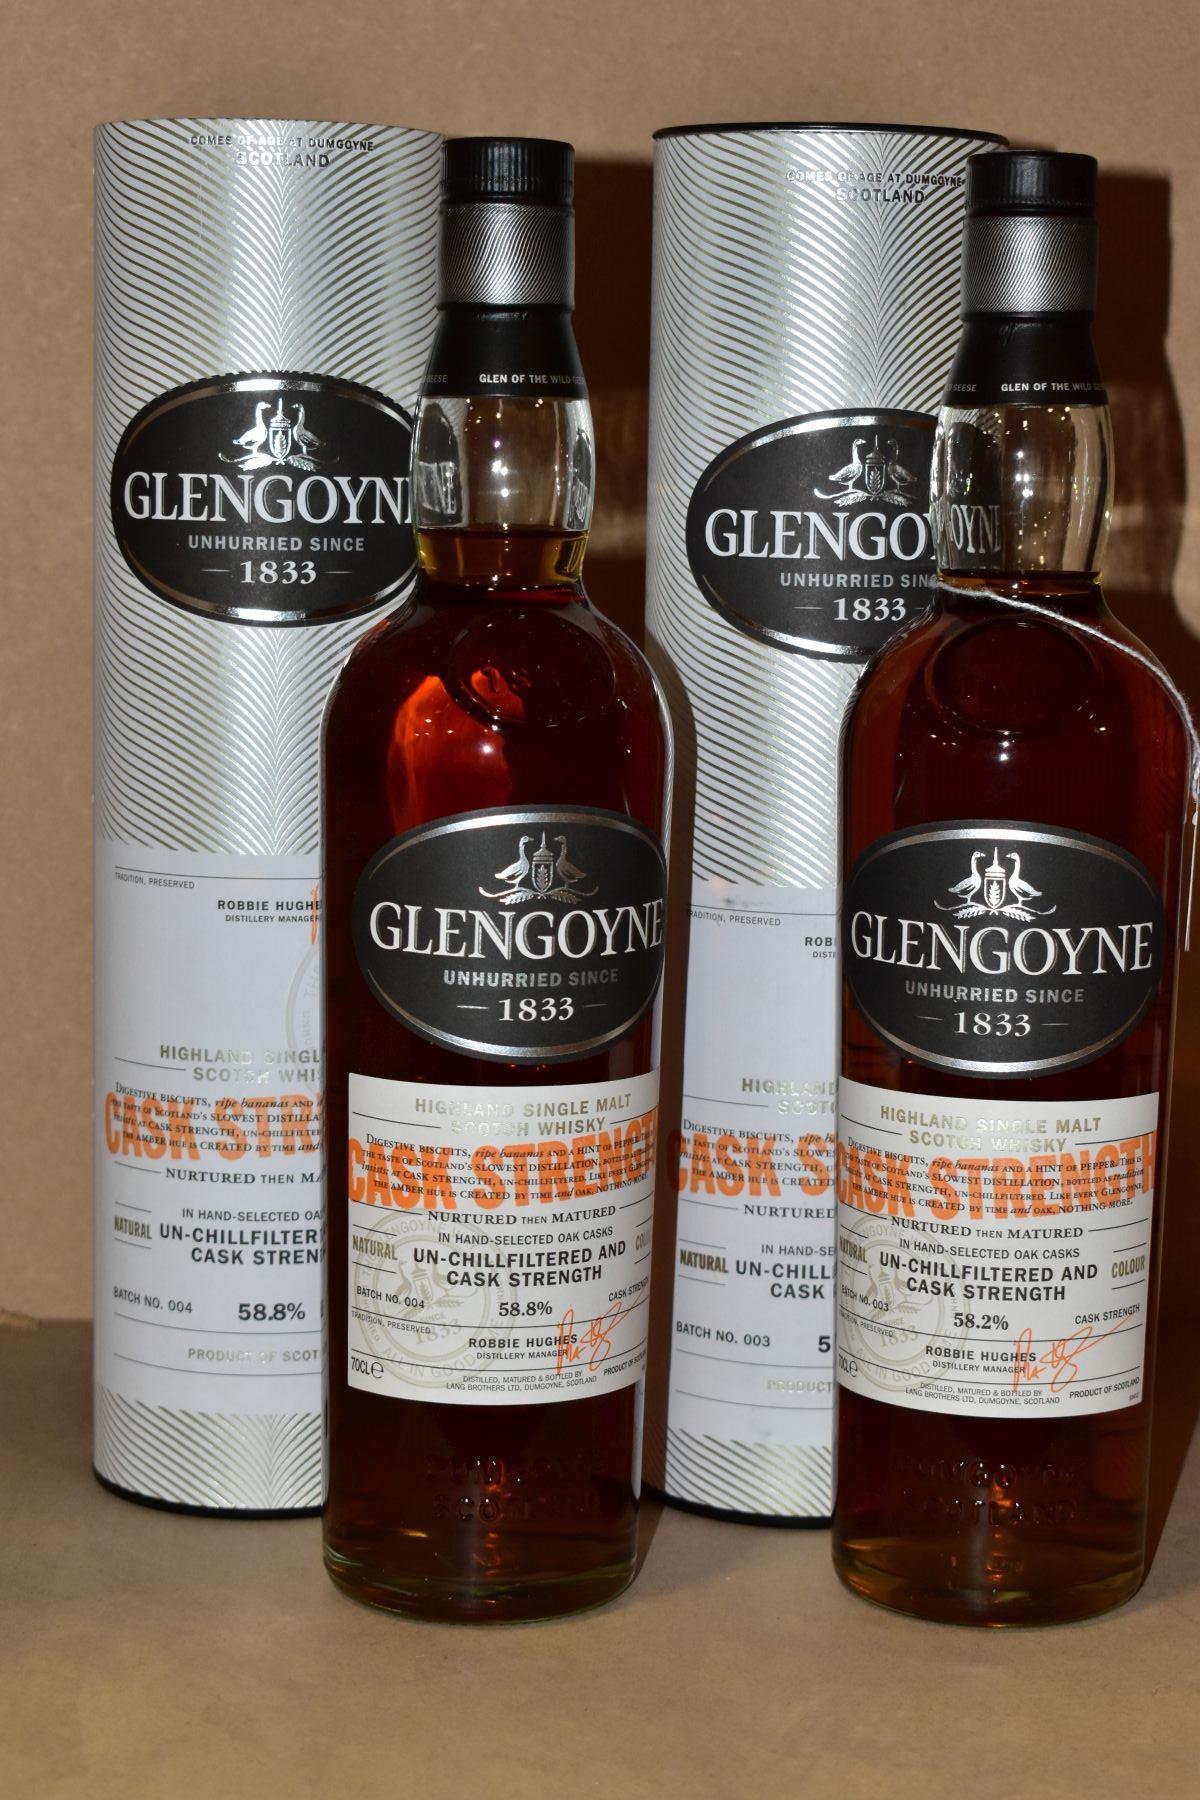 SINGLE MALT, two bottles of Glengoyne Cask Strength Single Malt Scotch Whisky, batch 003, 58.2% vol.